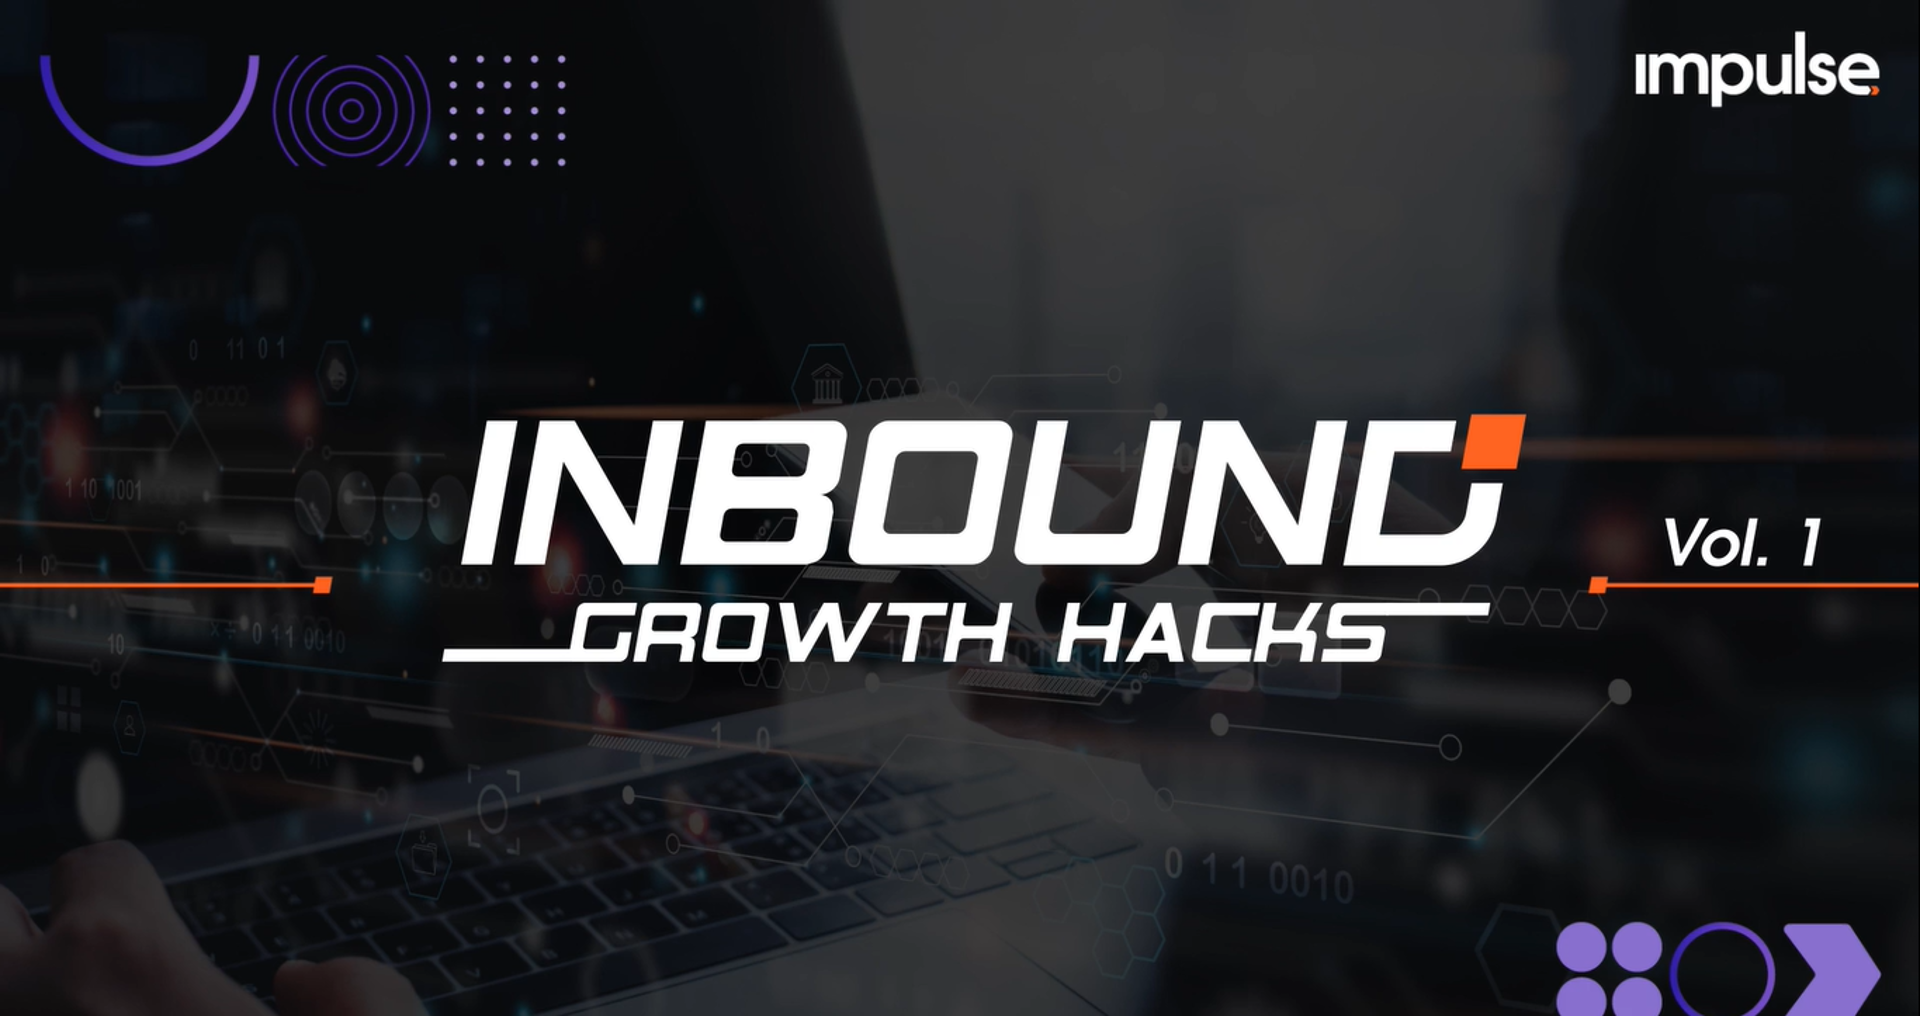 inbound growth hacks buenas practicas de growth